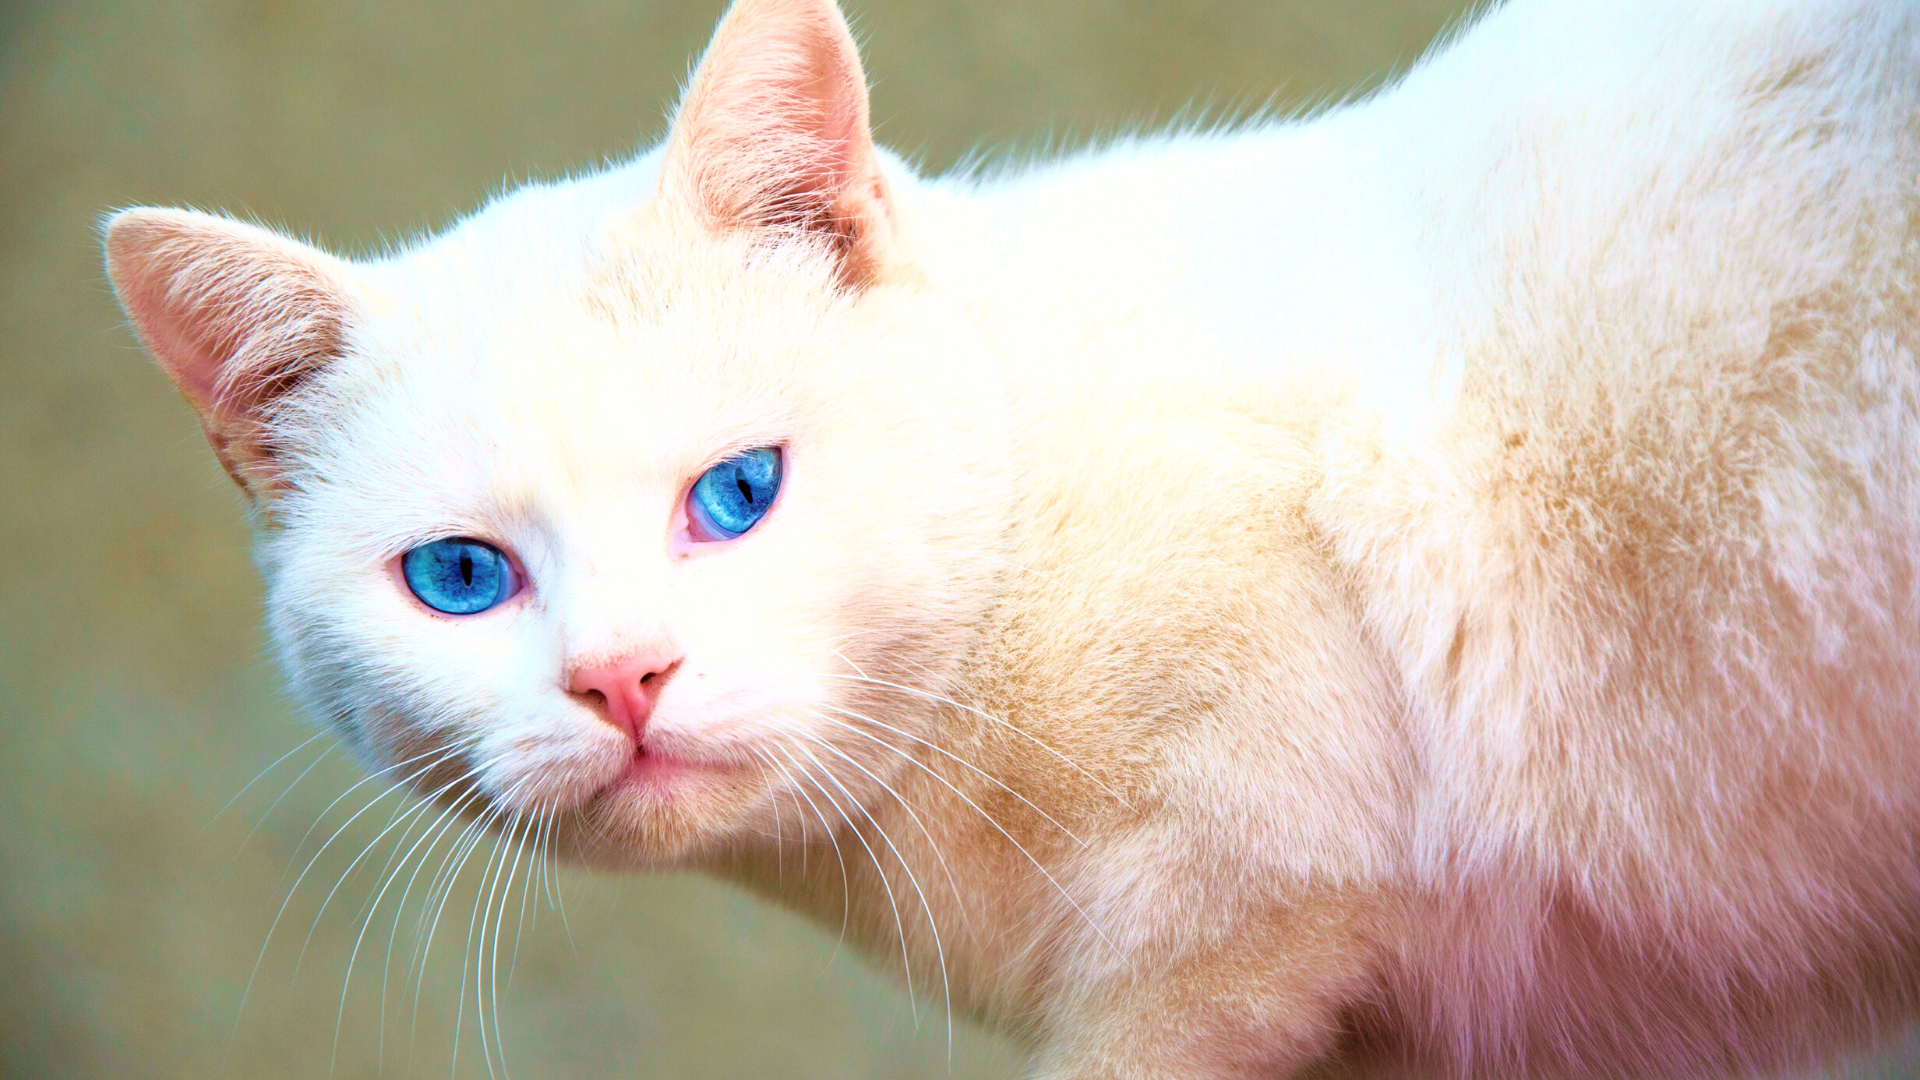 Witte kat met fel blauwe ogen kijkt in de camera. Kattenrassen met blauwe ogen.